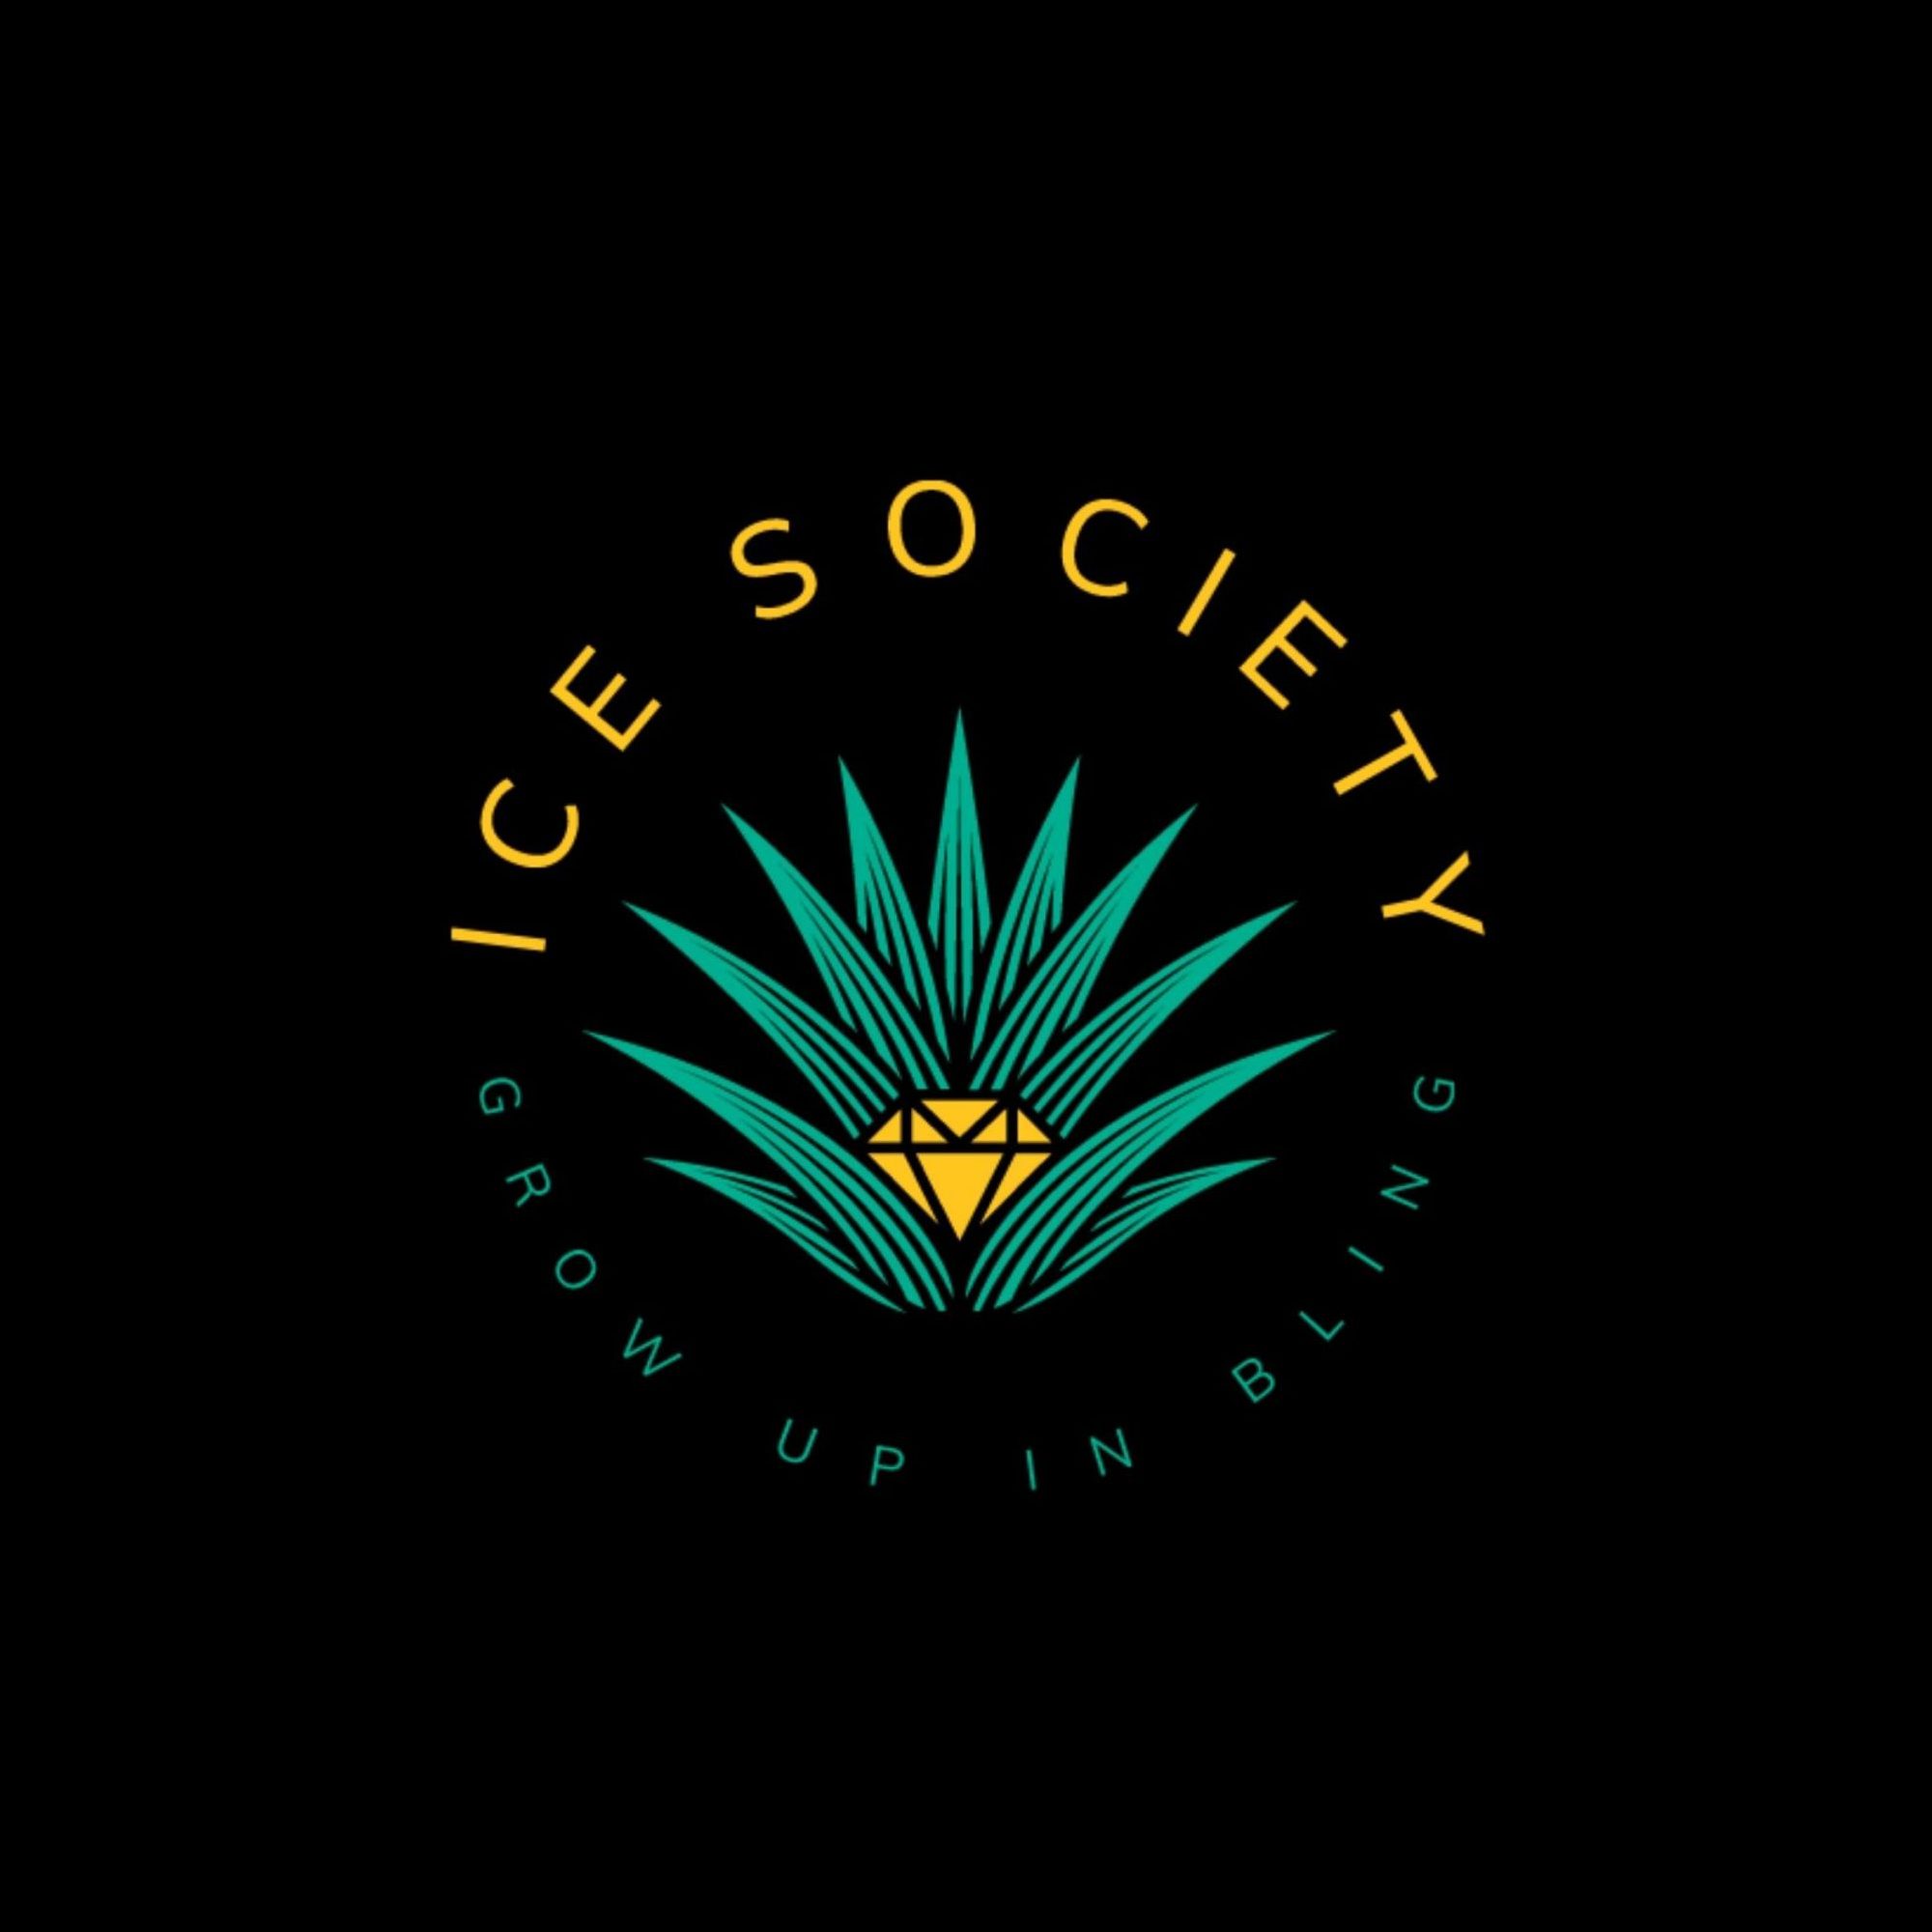 Ice Society